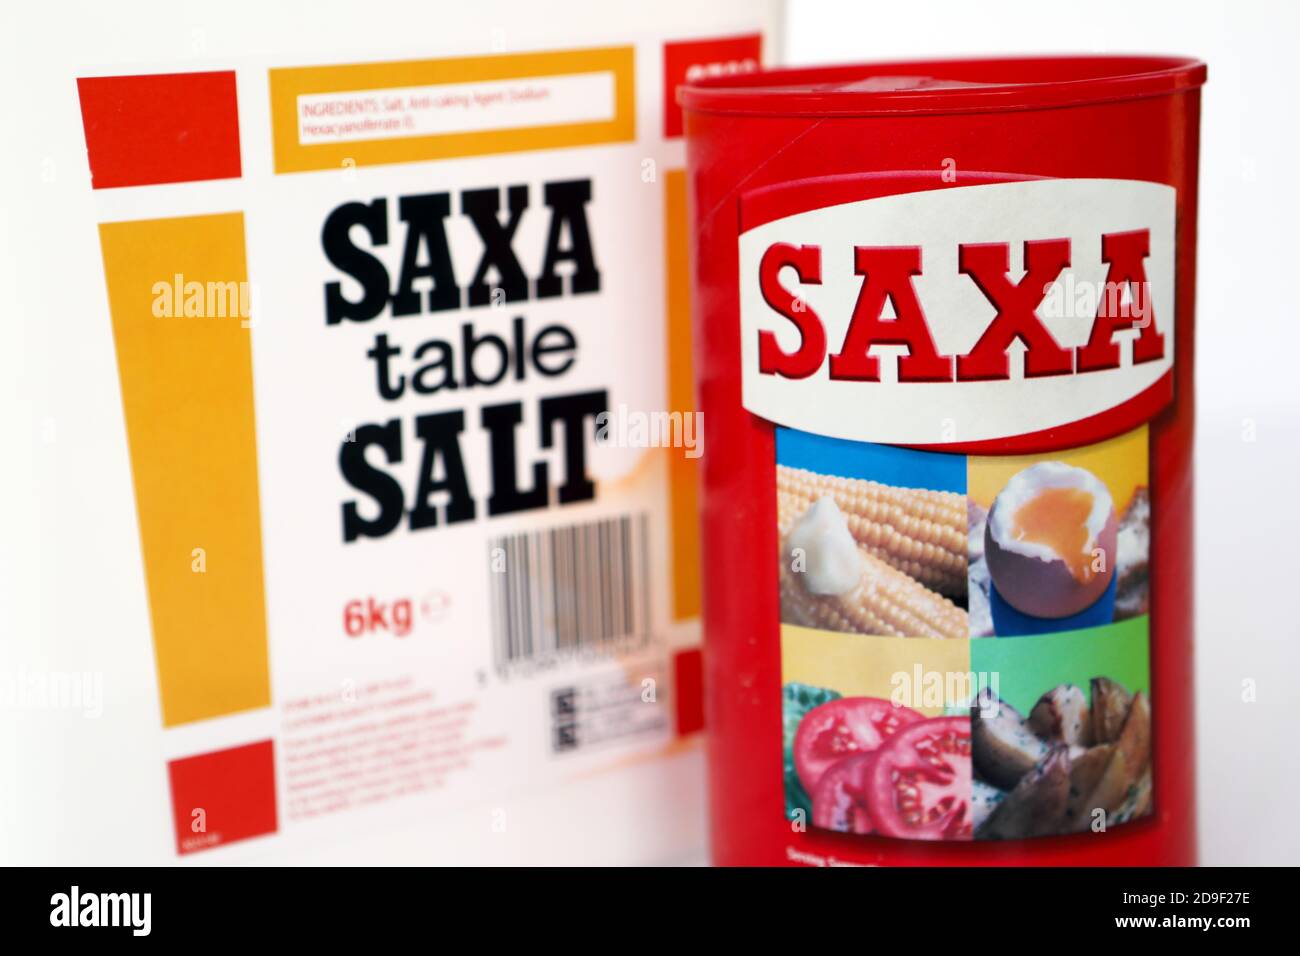 Sel de table Saxa Banque D'Images